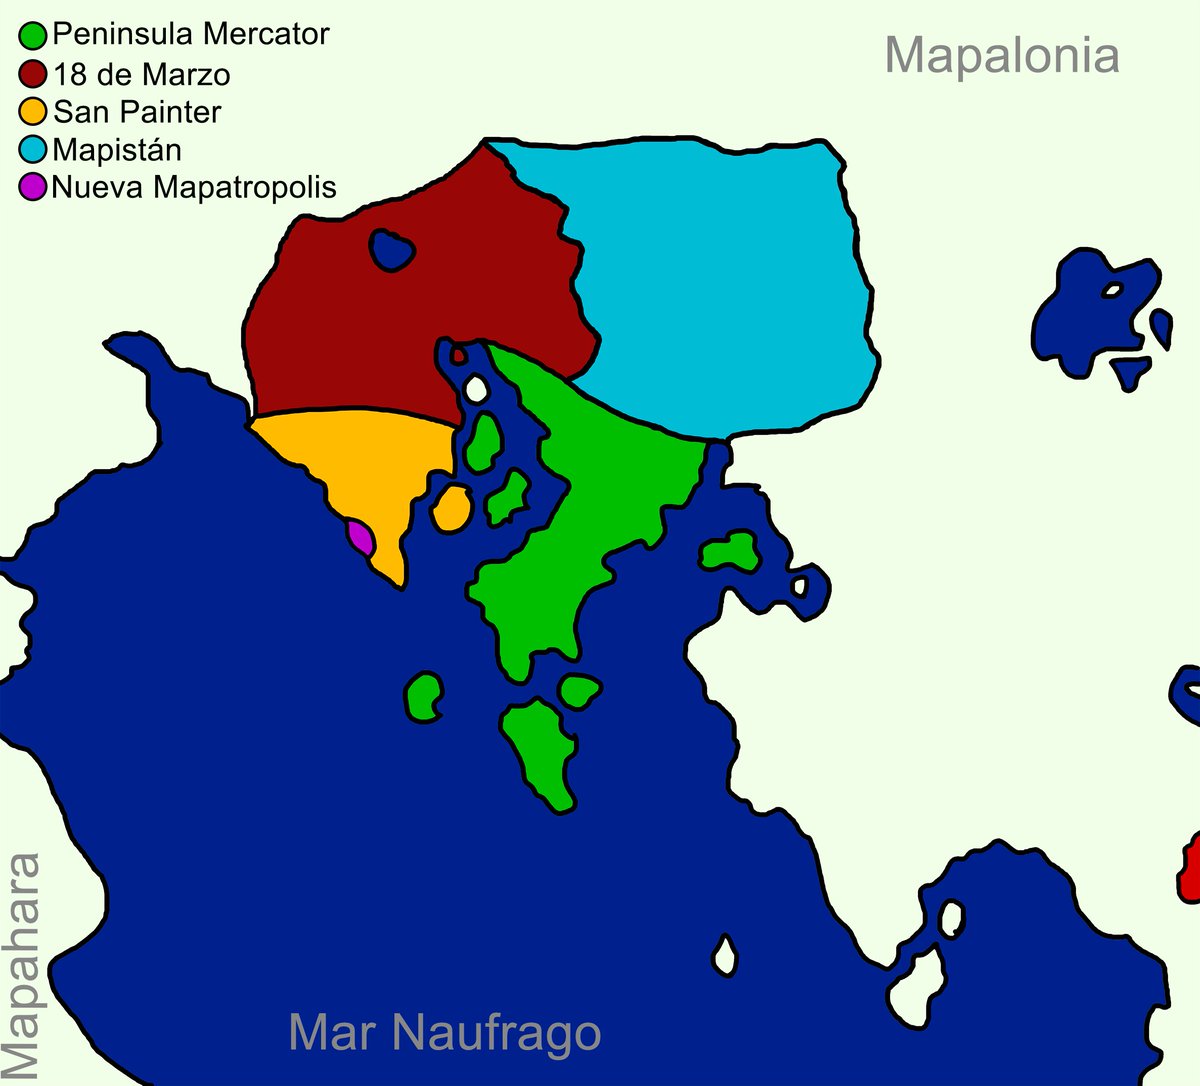 Nuevo mapa de la nación mapa.